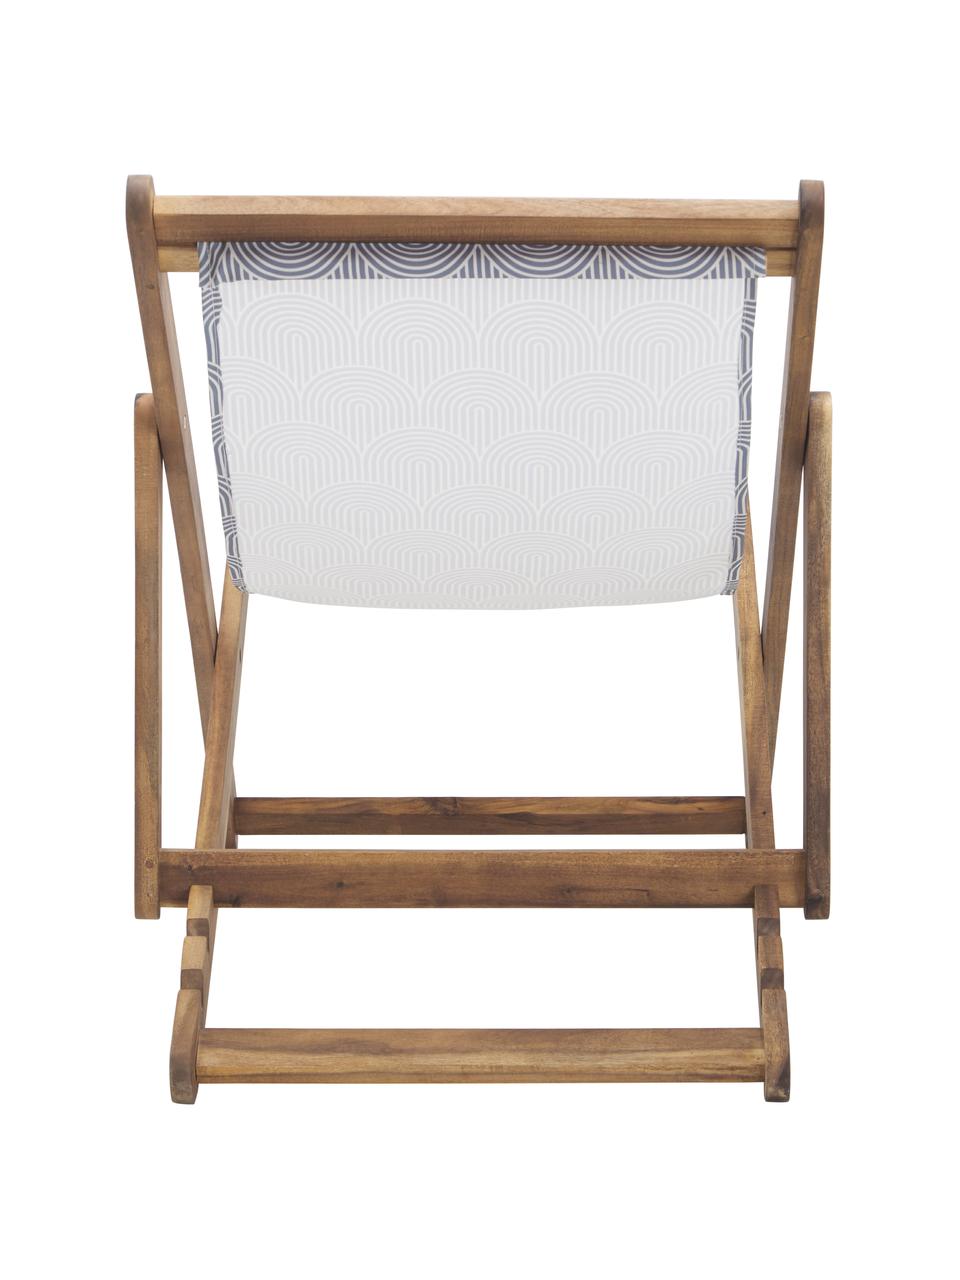 Inklapbare ligstoel Zoe, Frame: massief geolied acaciahou, Grijs, 59 x 84 cm